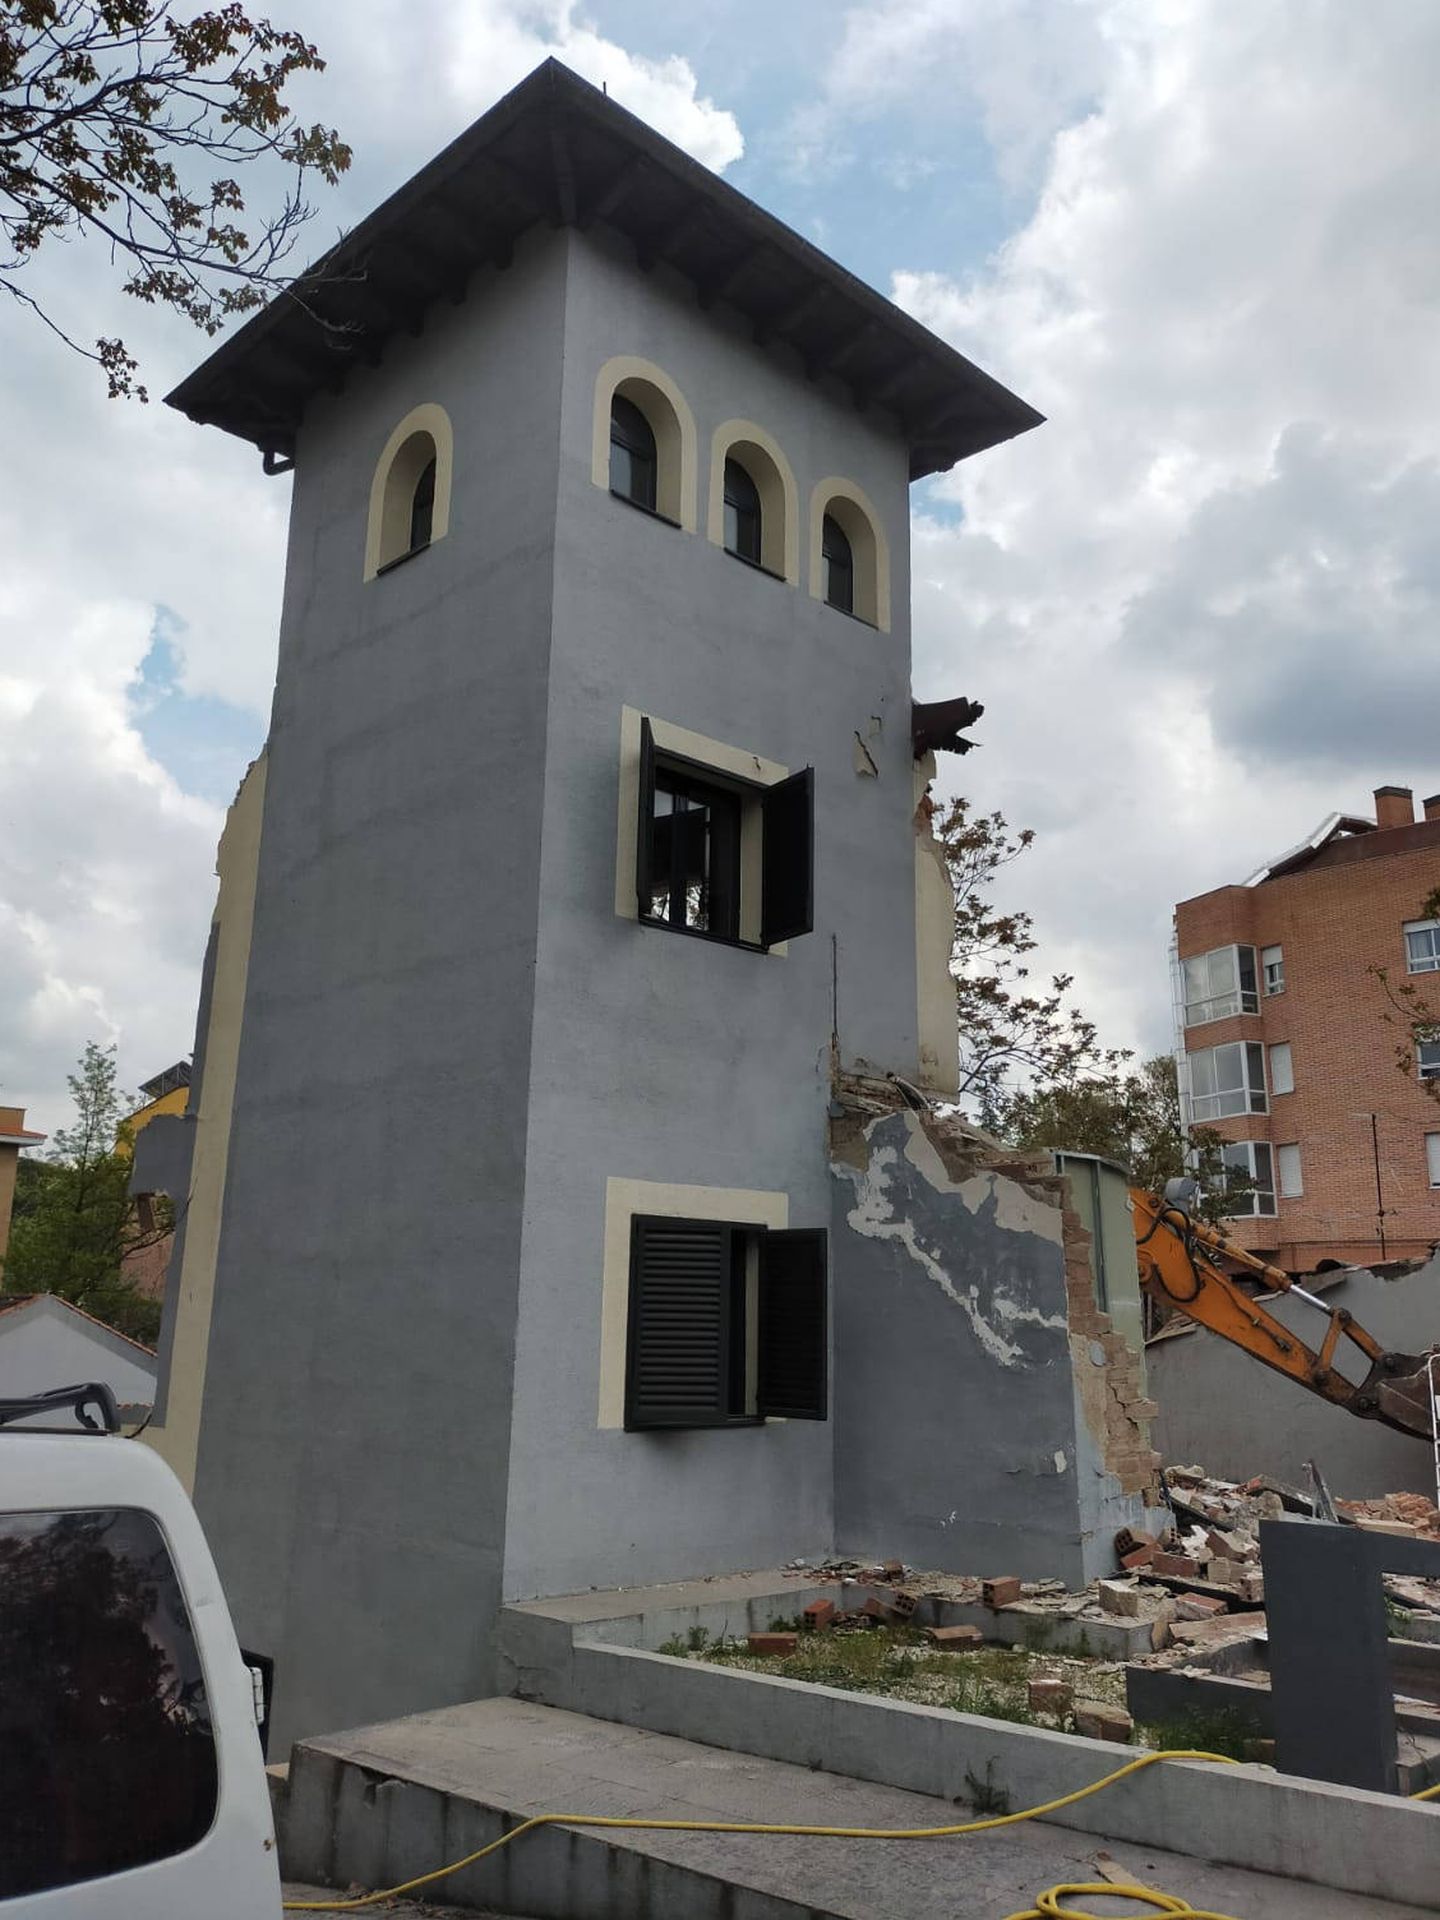 La casa derribada recientemente en López de Hoyos, 370 (LEGADO ARTURO SORIA)